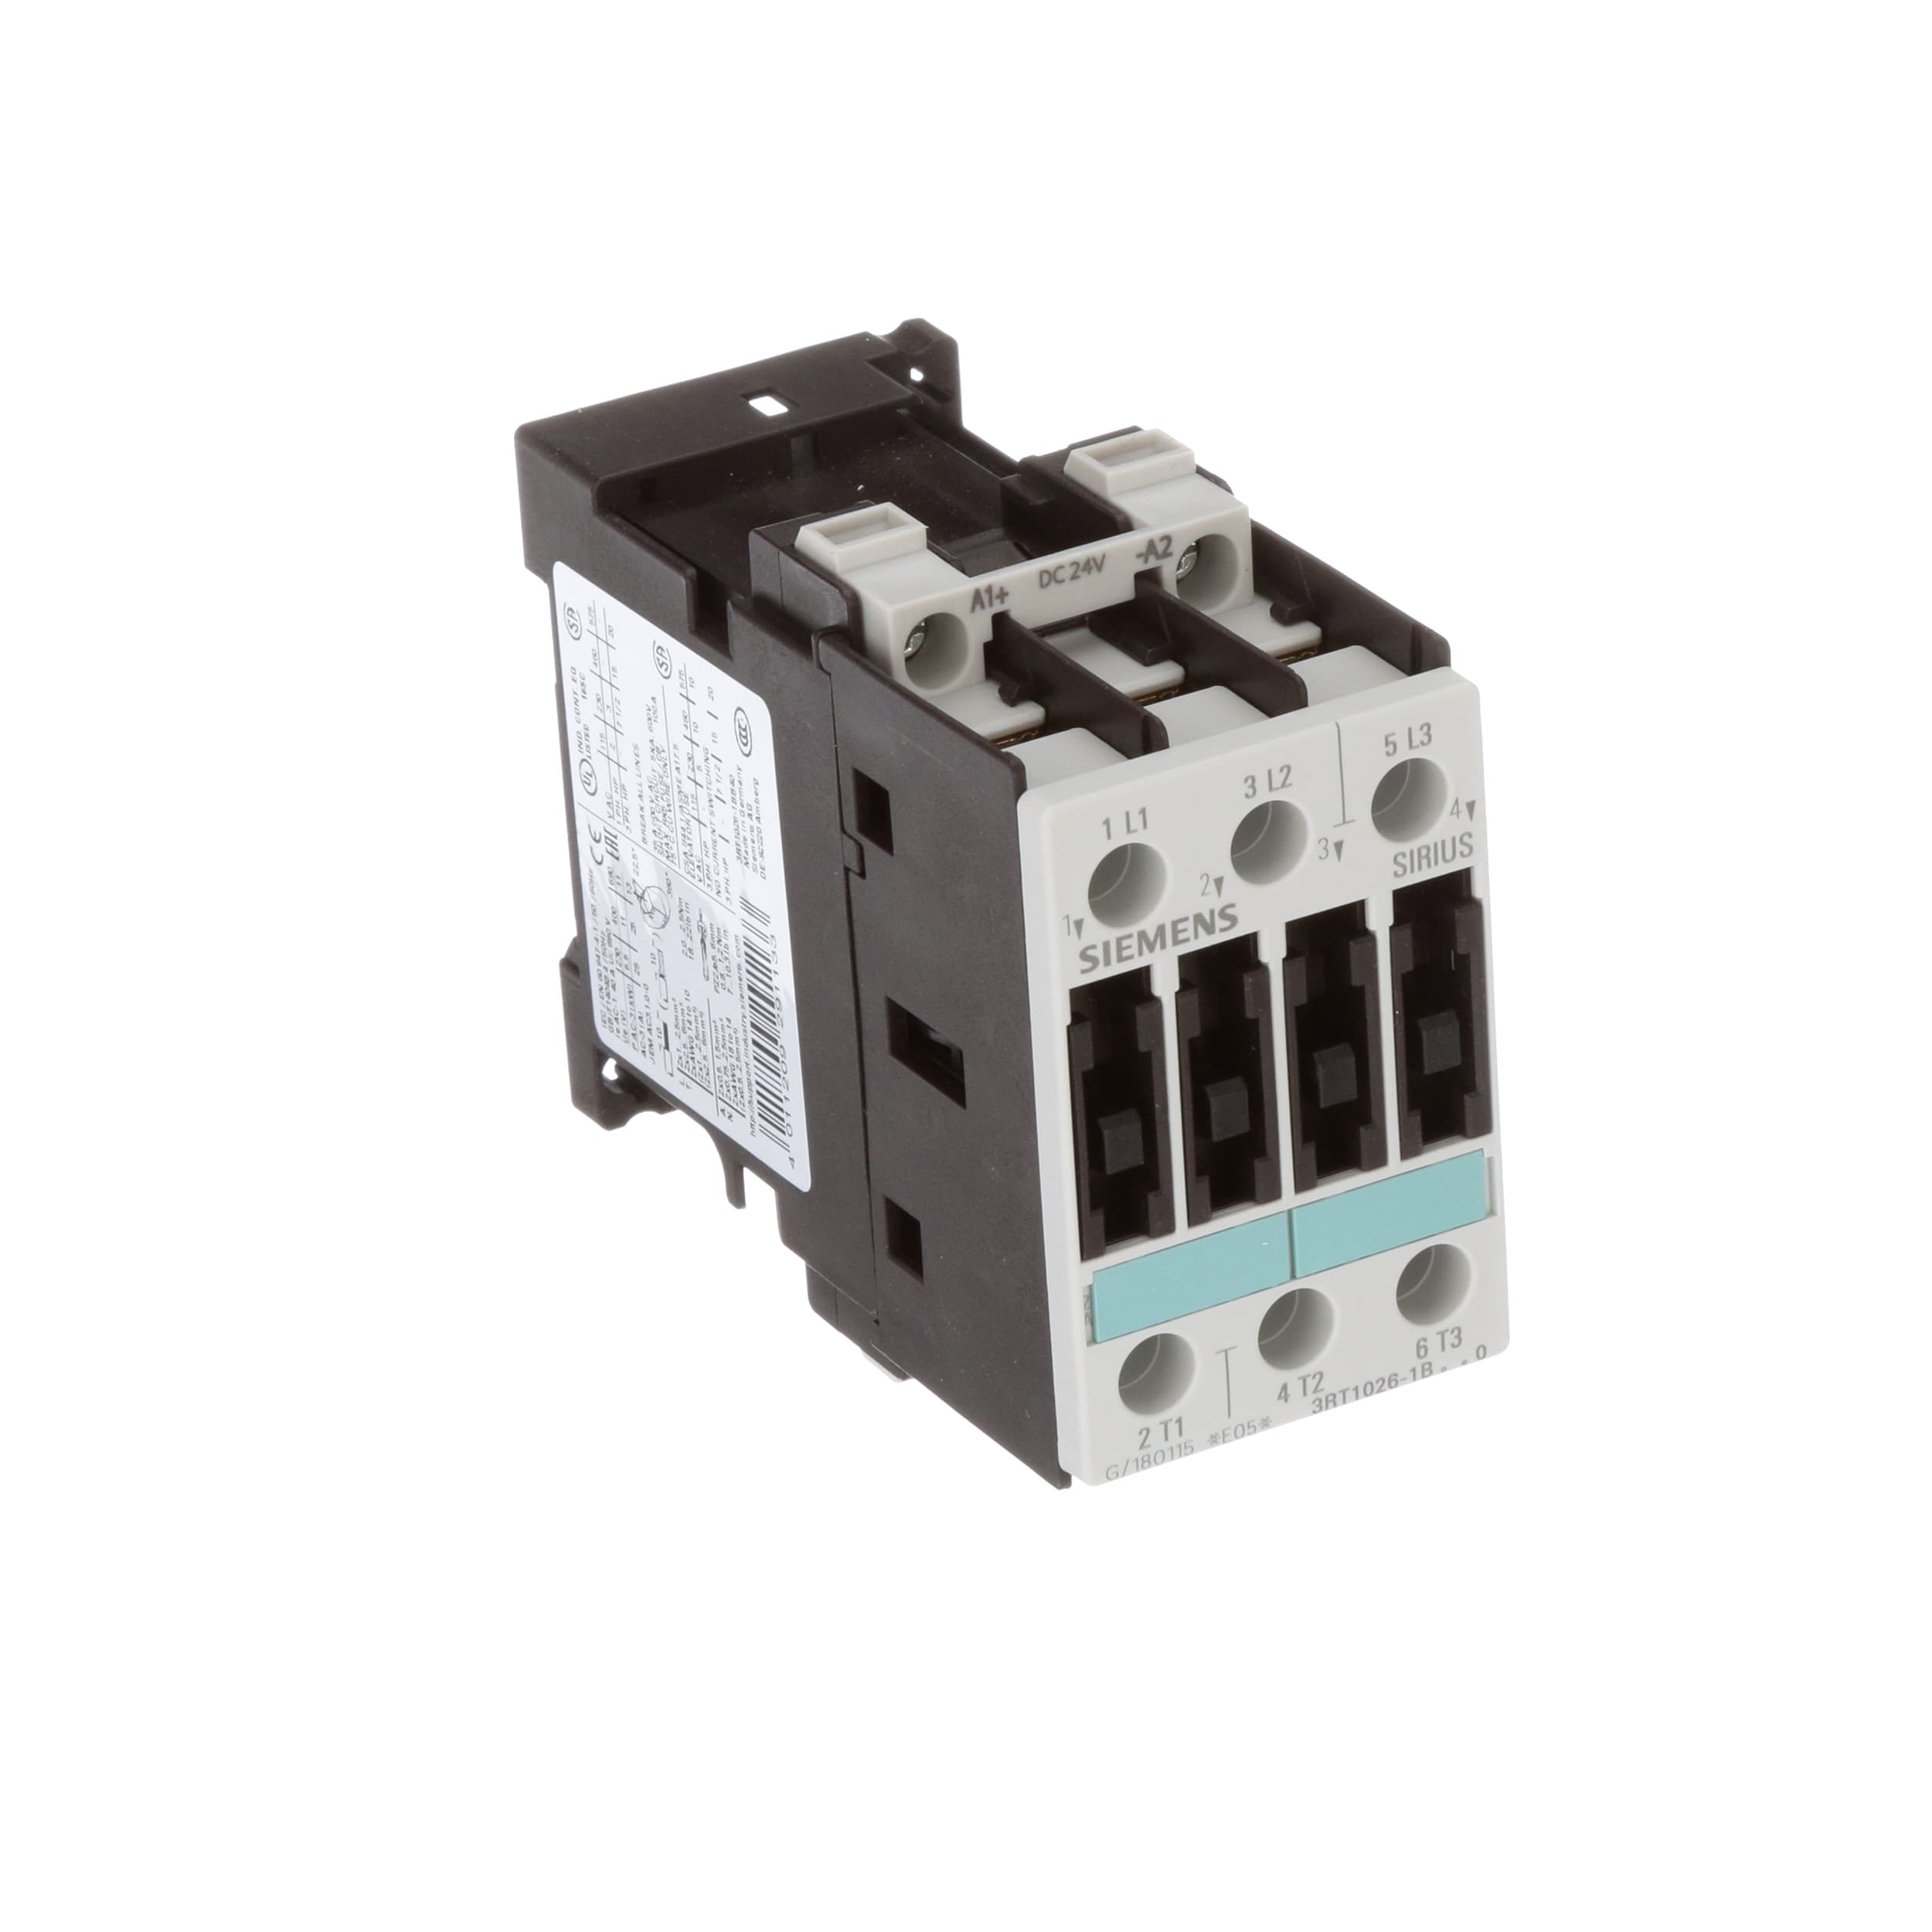 Siemens 3RT1026-1B..0 Motor Starter Contactor 24 VDC Coil 3RT1026-1BB40 